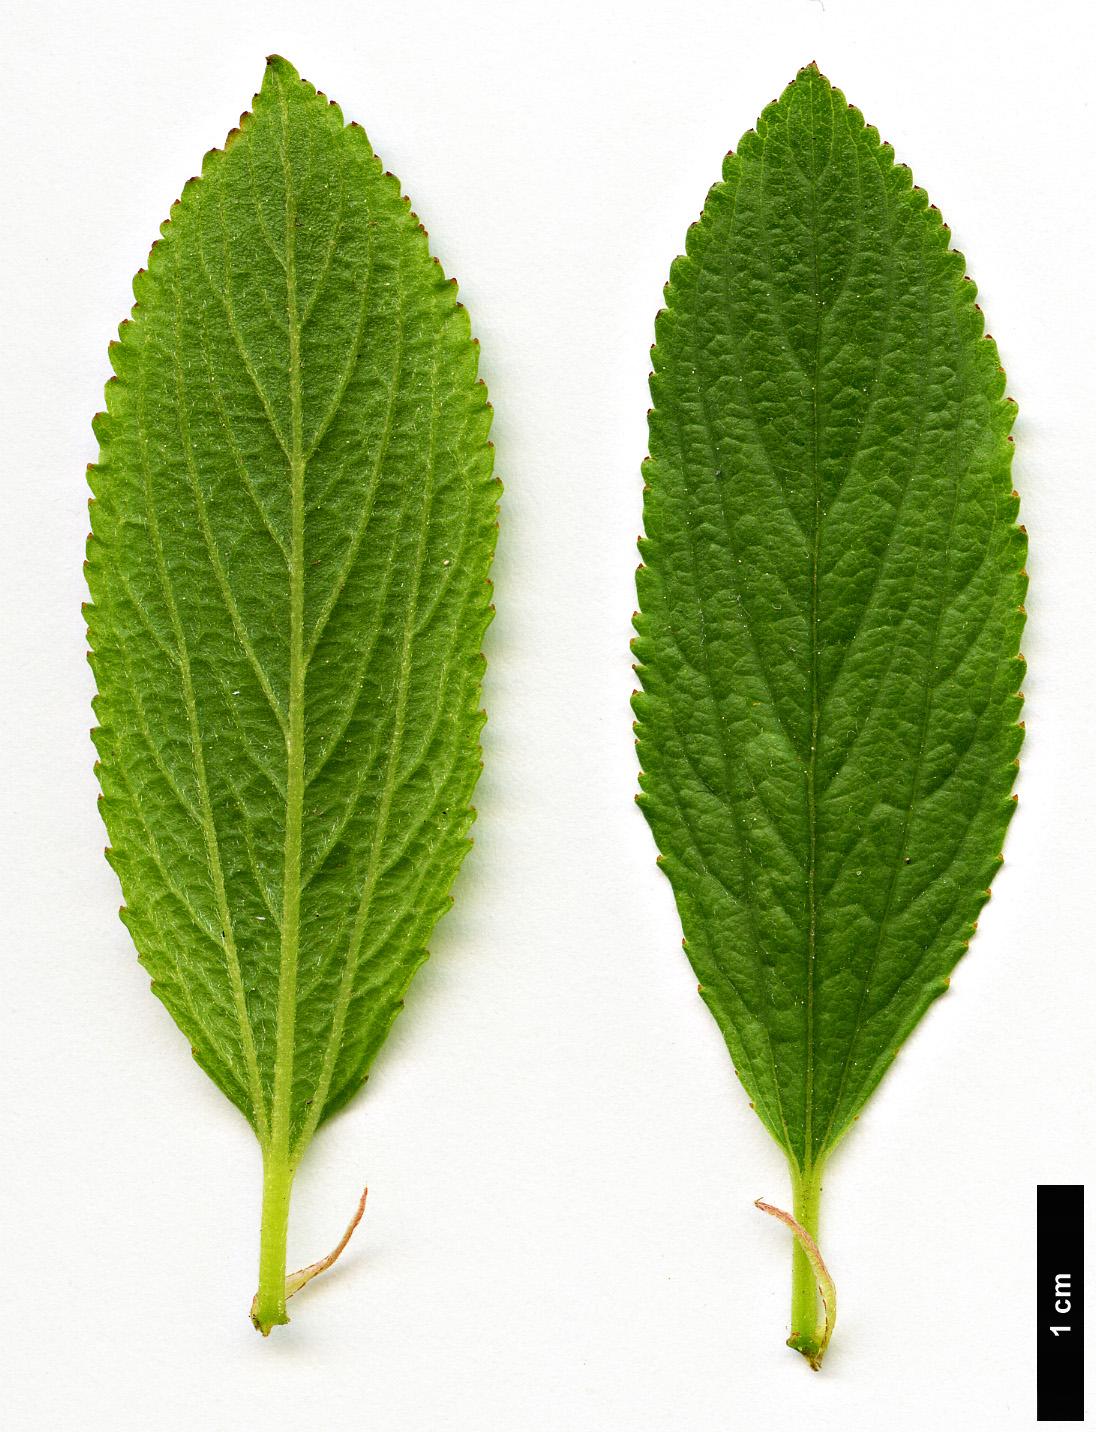 High resolution image: Family: Rhamnaceae - Genus: Ceanothus - Taxon: herbaceus